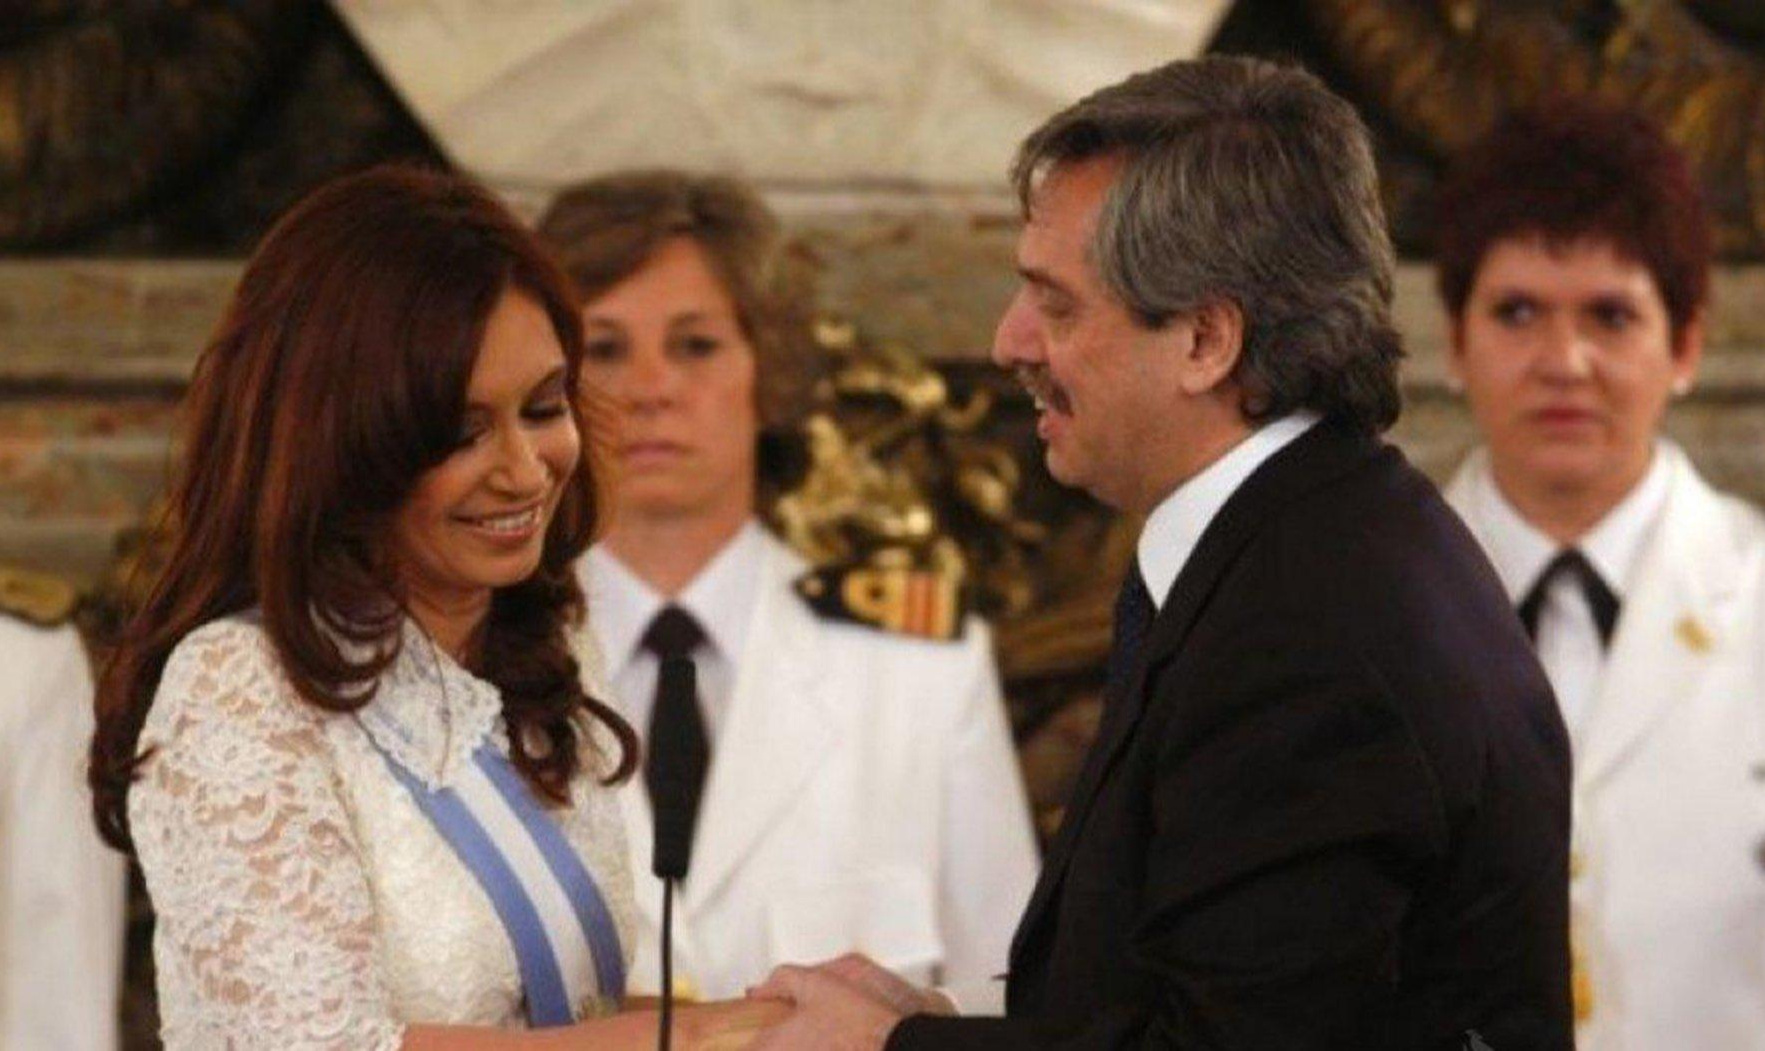 Durante o governo de Cristina Kirchner, veículos investiram na desestabilização da economia e no caos político